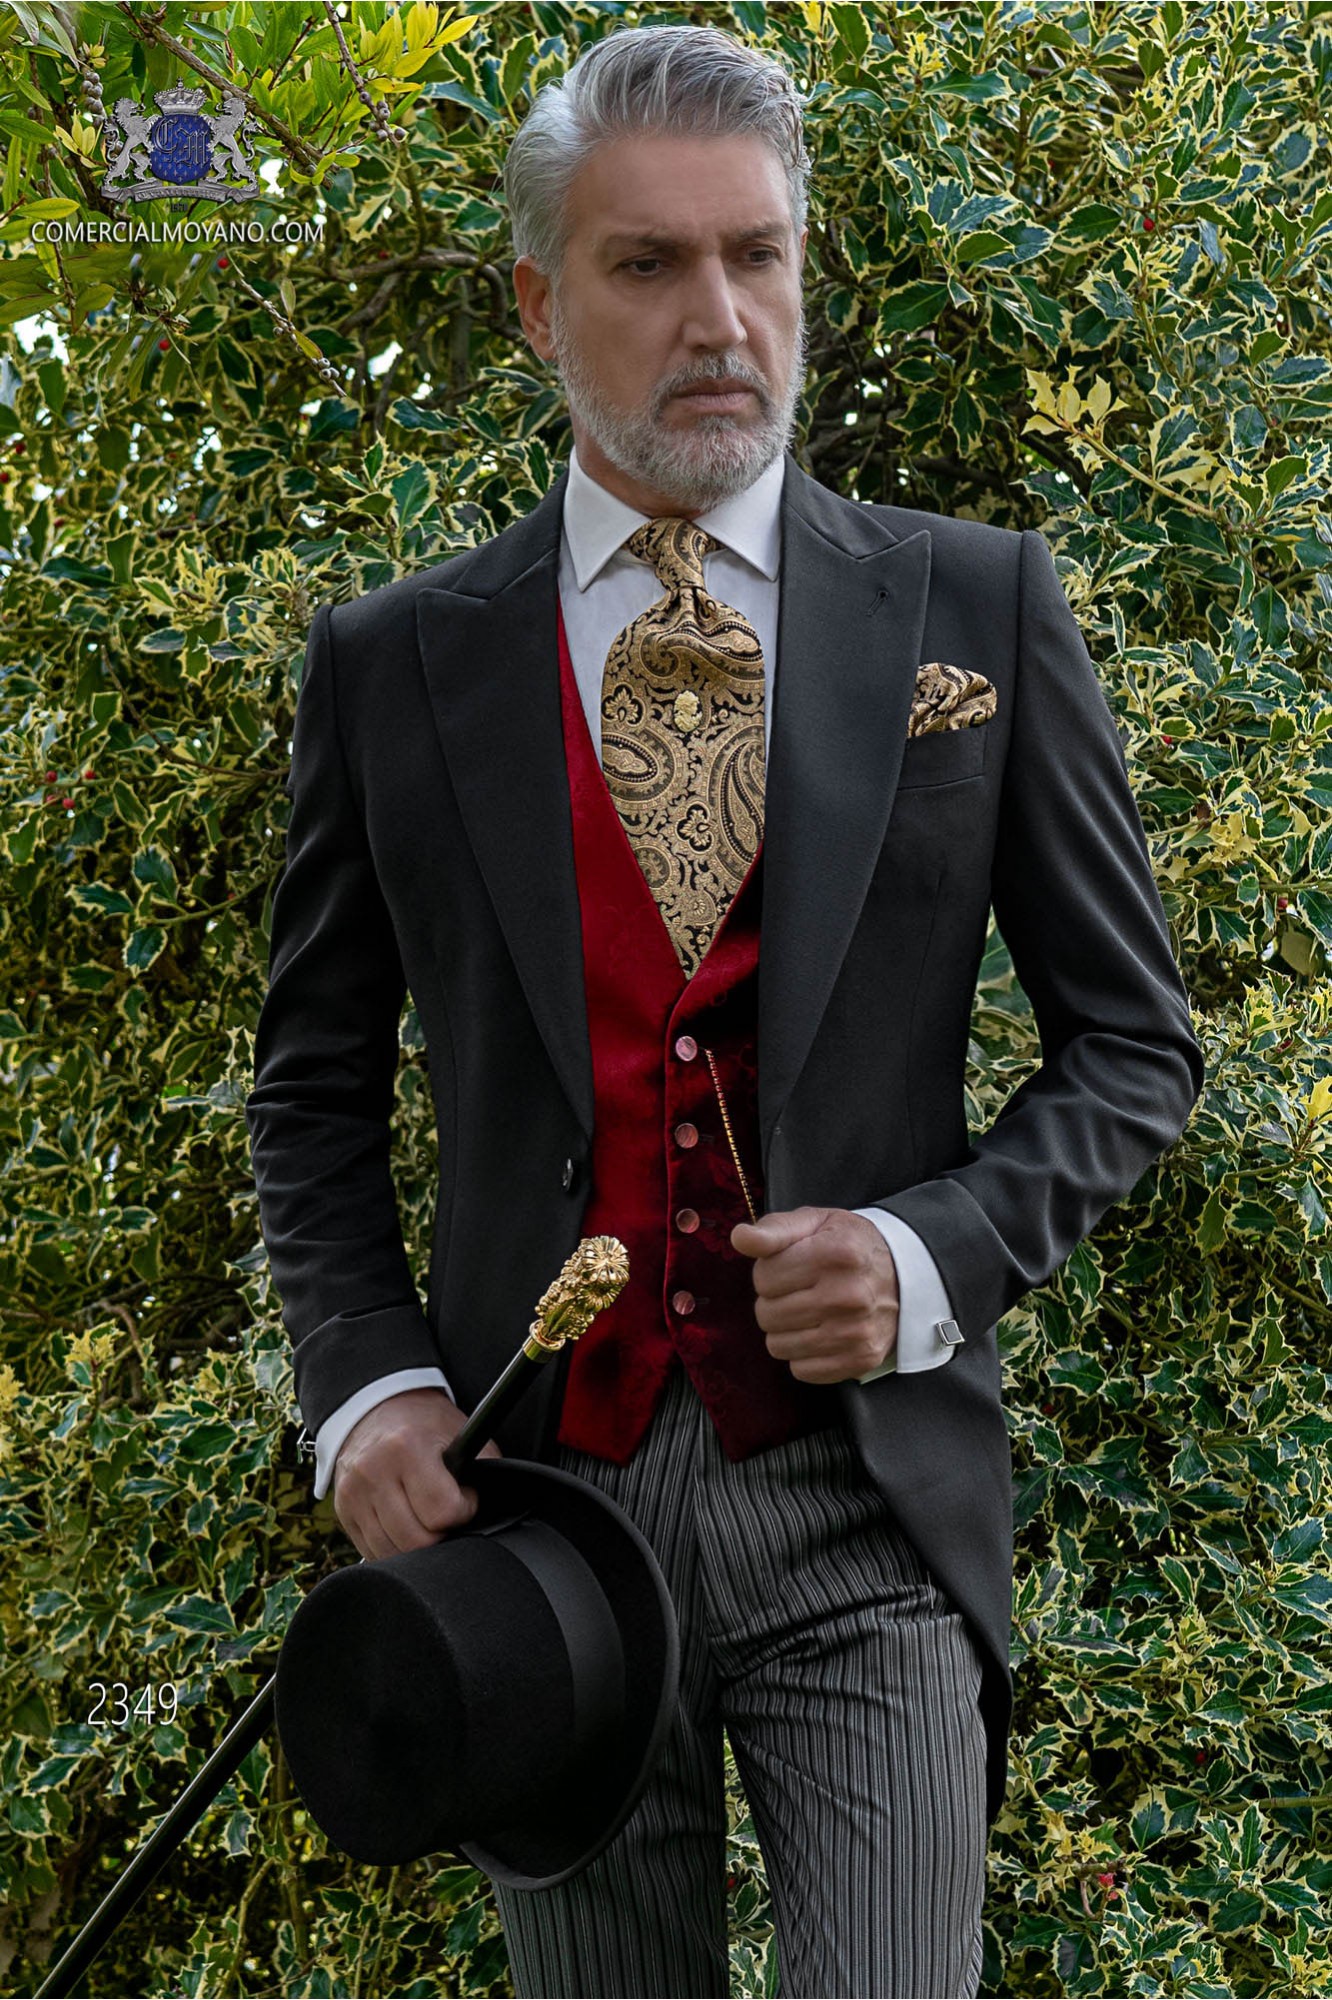 Chaqué de novio negro tejido lana con pantalón raya diplomática modelo: 2349 Mario Moyano colección Gentleman